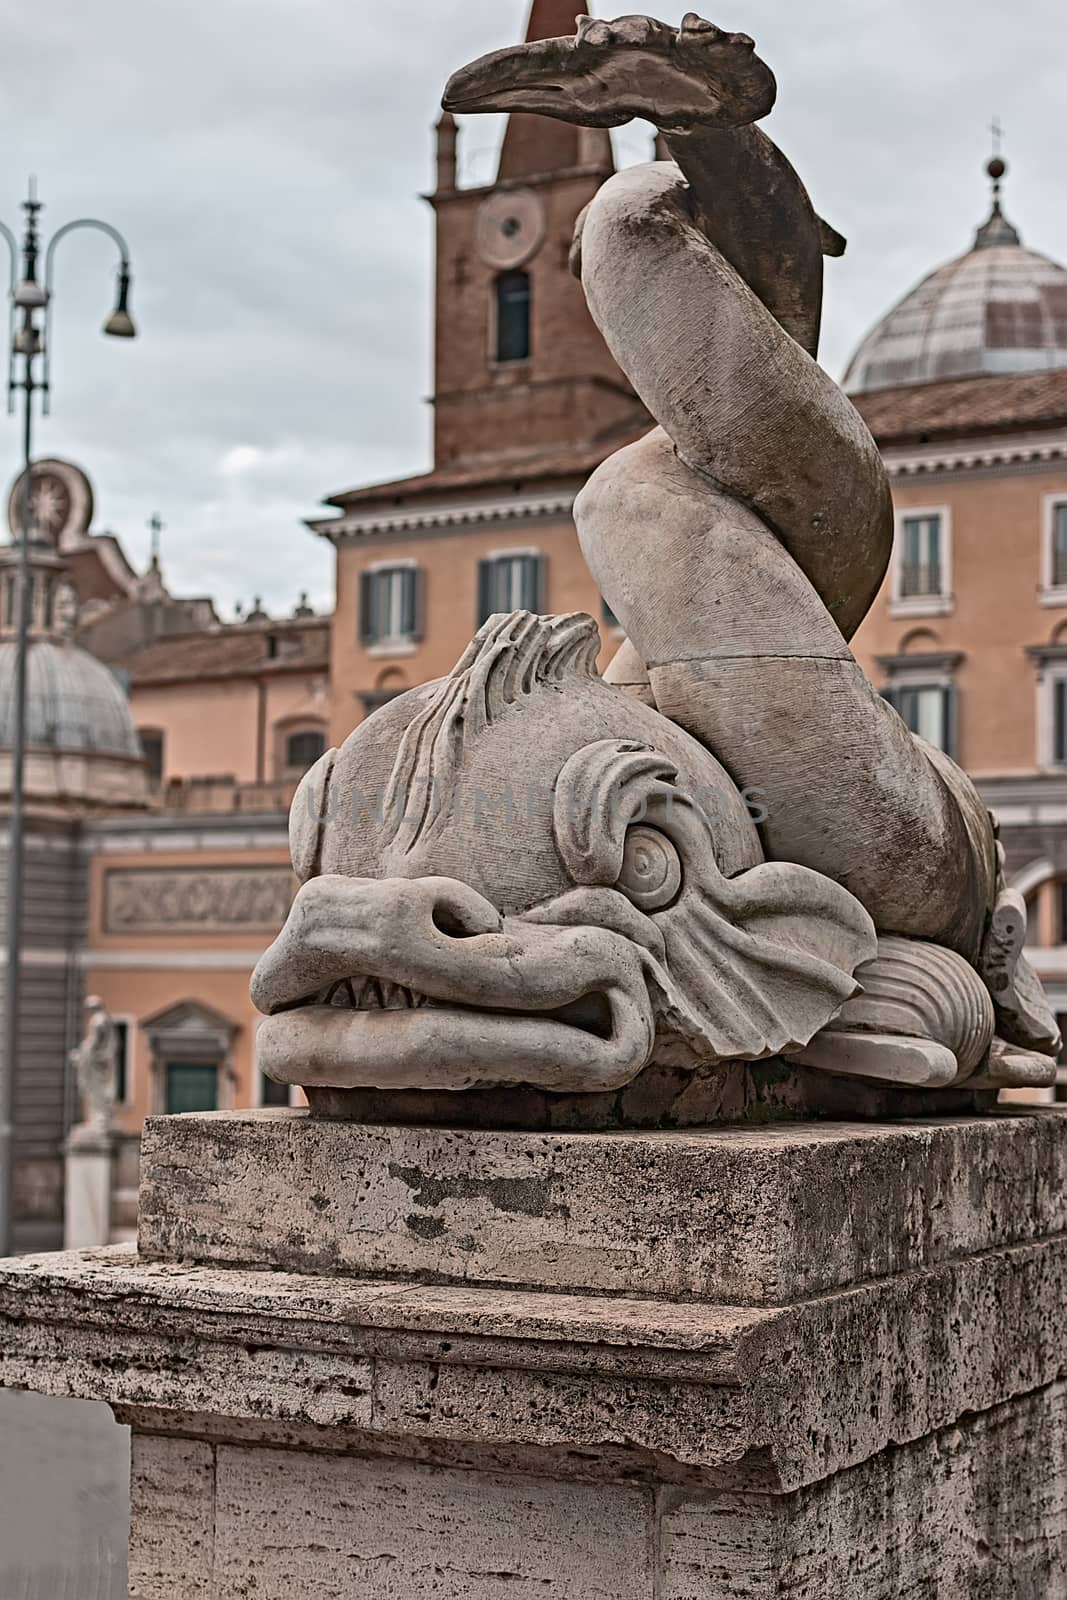 Fish statue in Rome Piazza del Popolo by EnzoArt